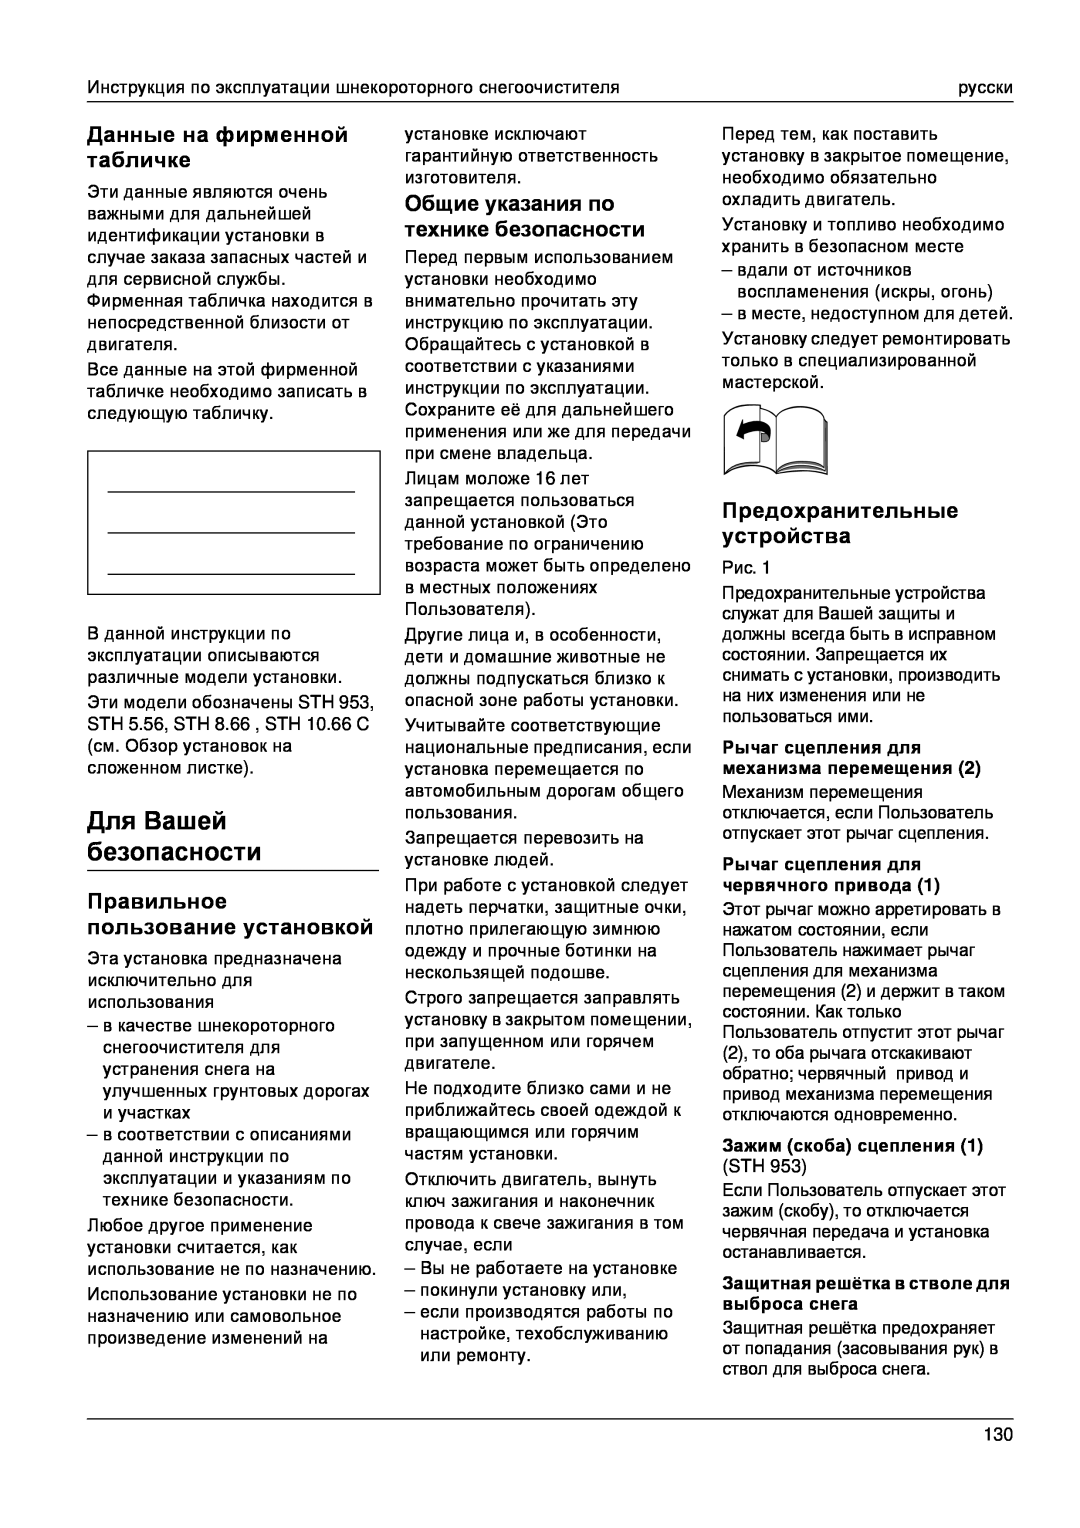 Karcher STH 953 manual Для Вашей безопасности, Данные на фирменной табличке, Правильное пользование установкой 